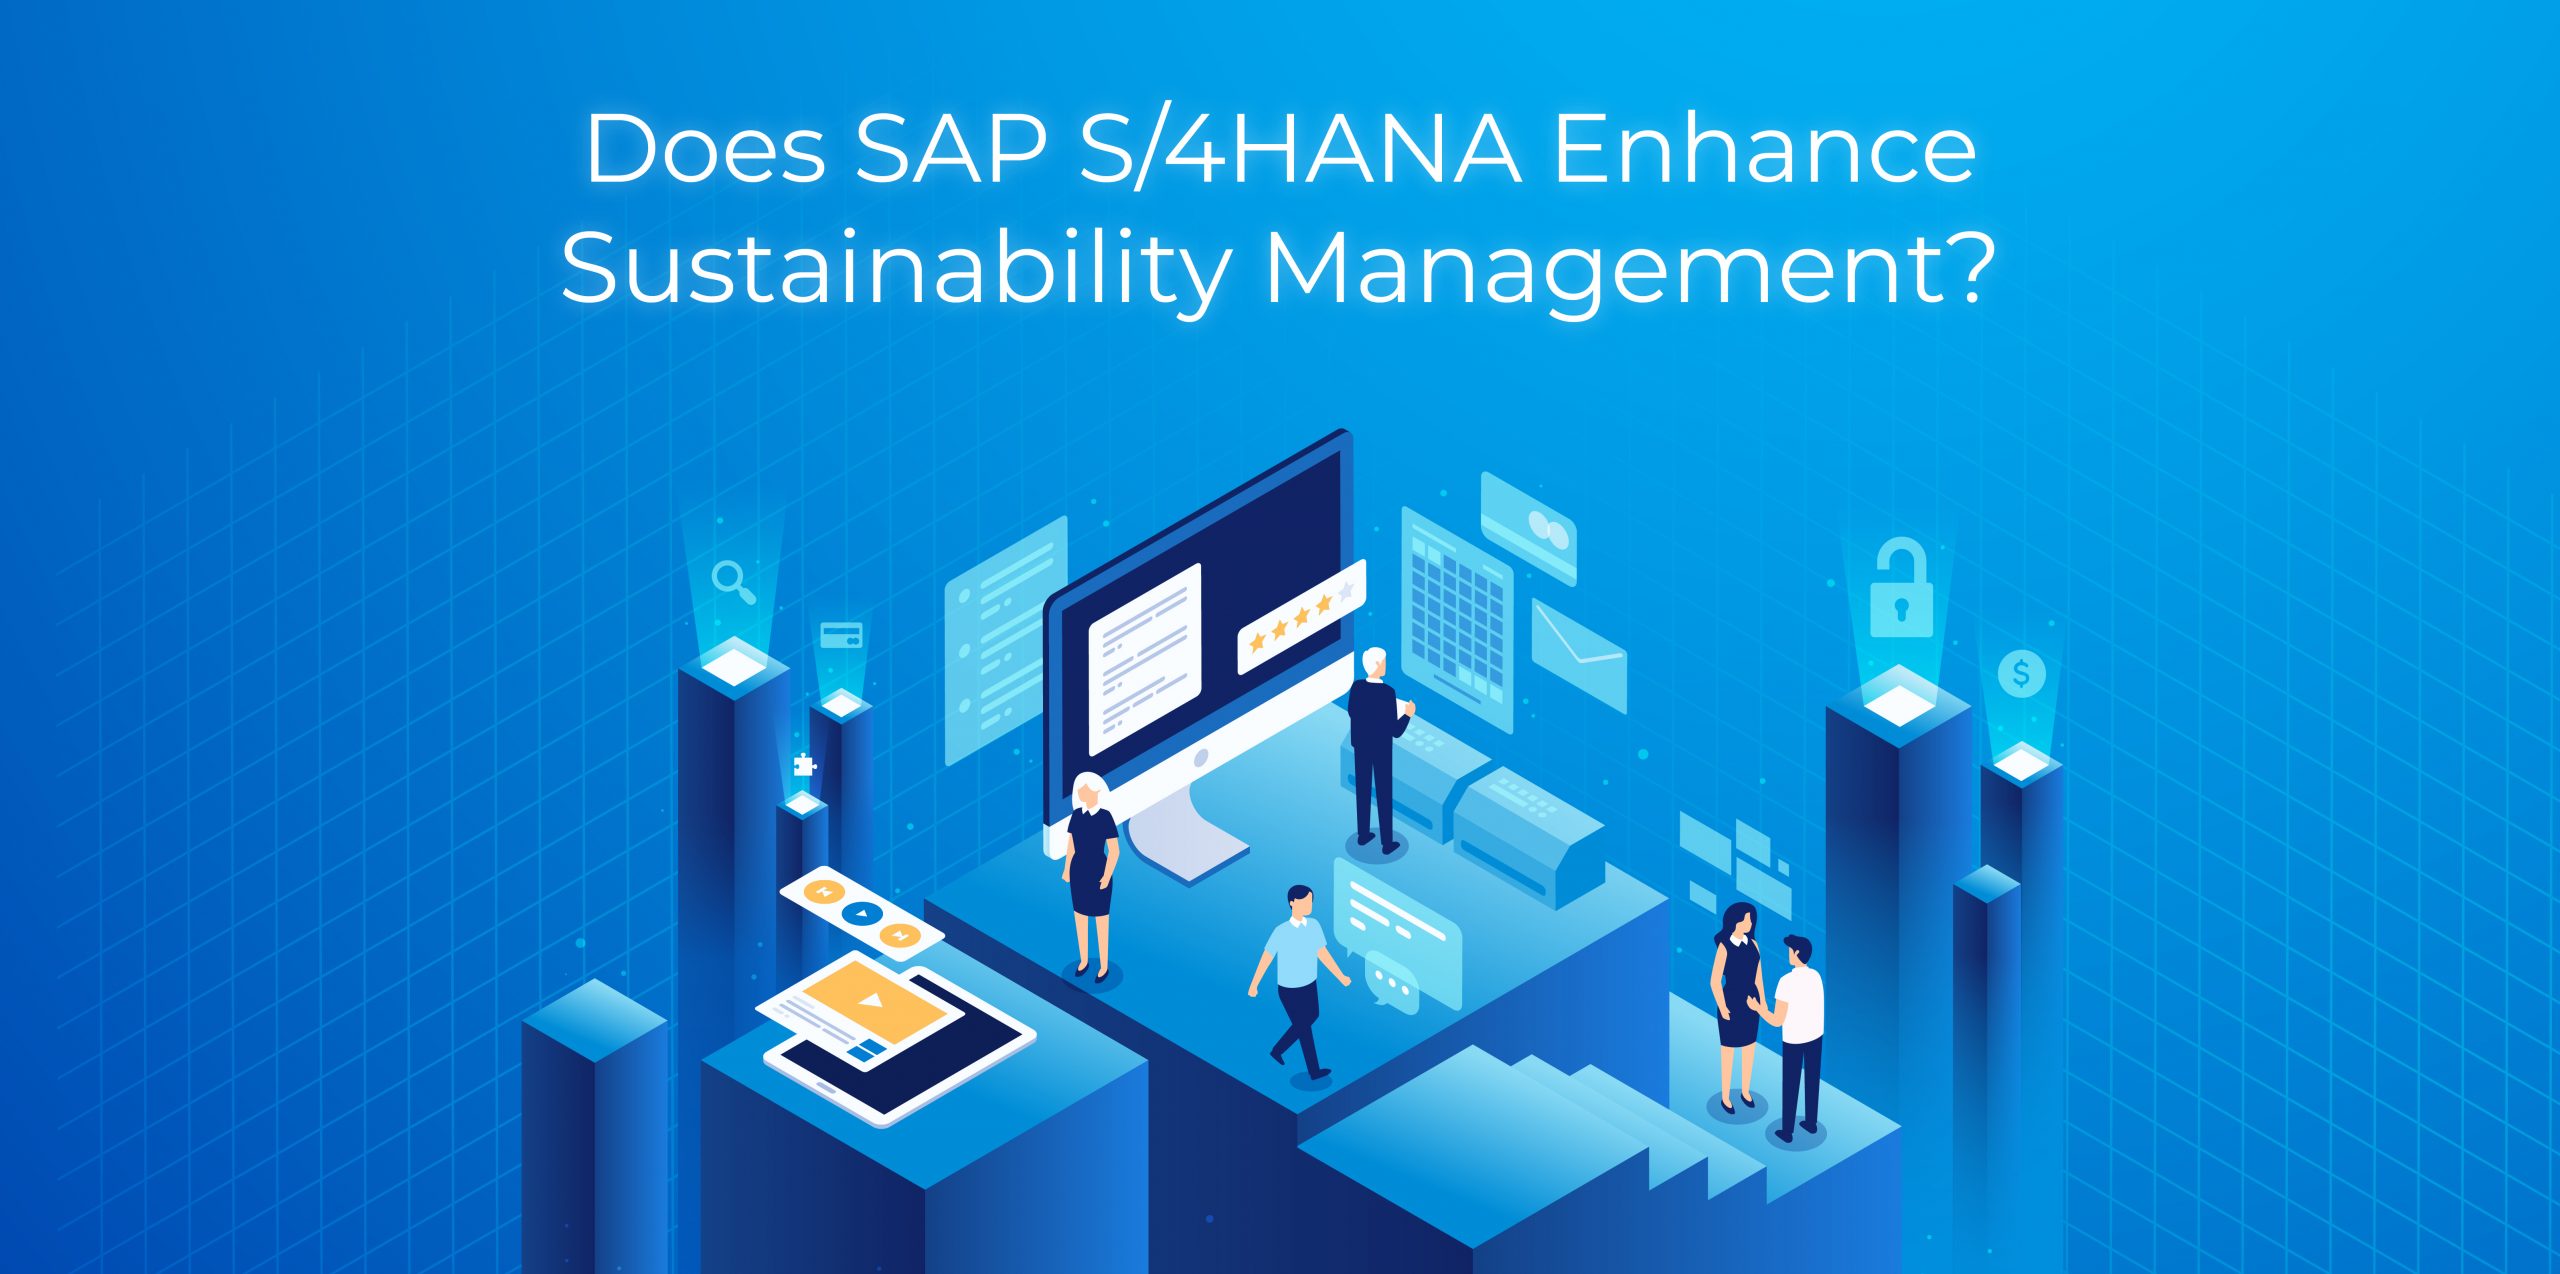 Does S4HANA Enhance Sustainability Management?